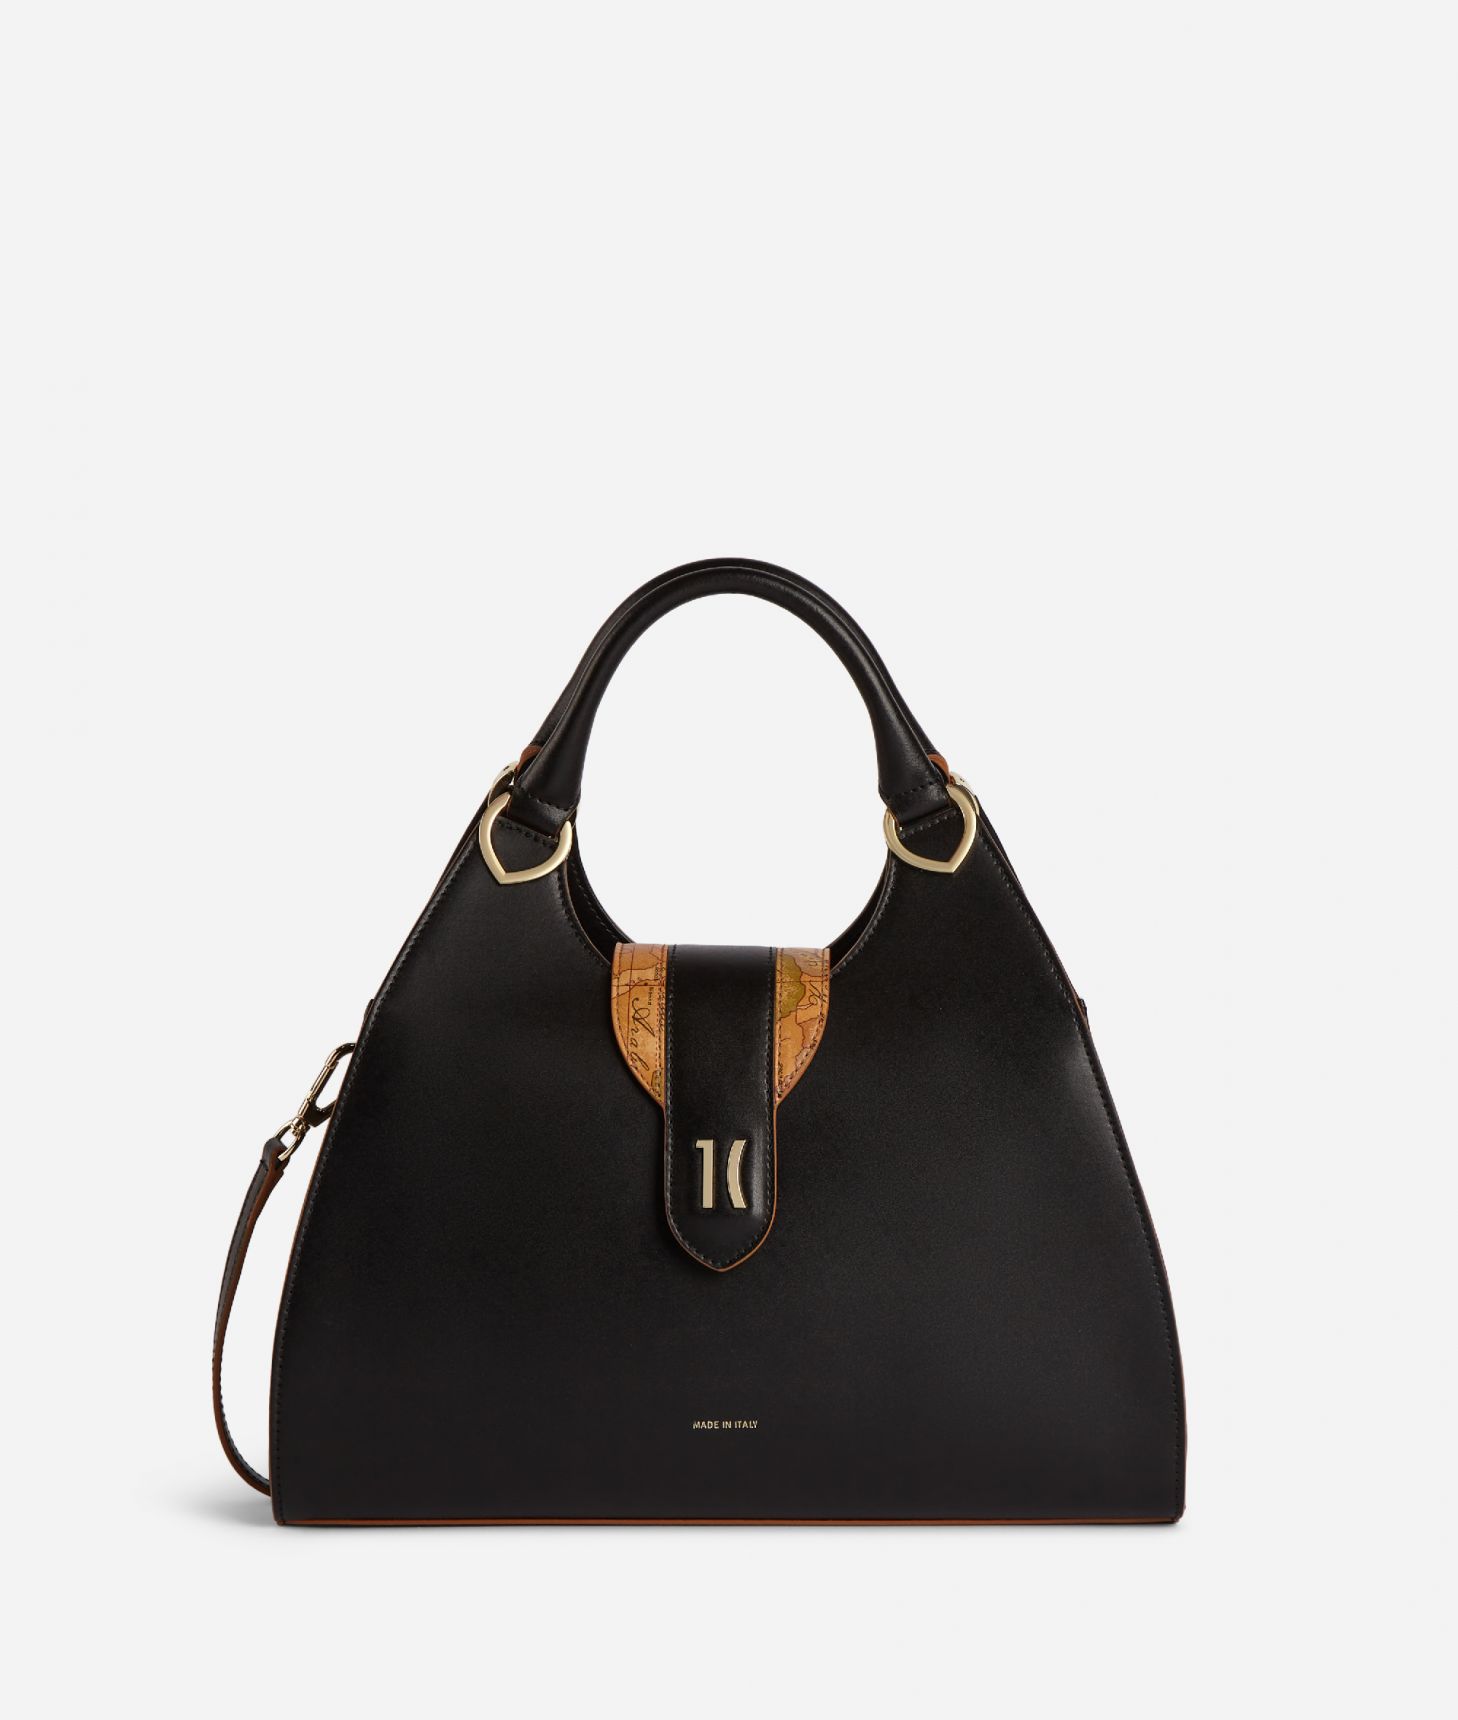 Roma Handbag Black ,front